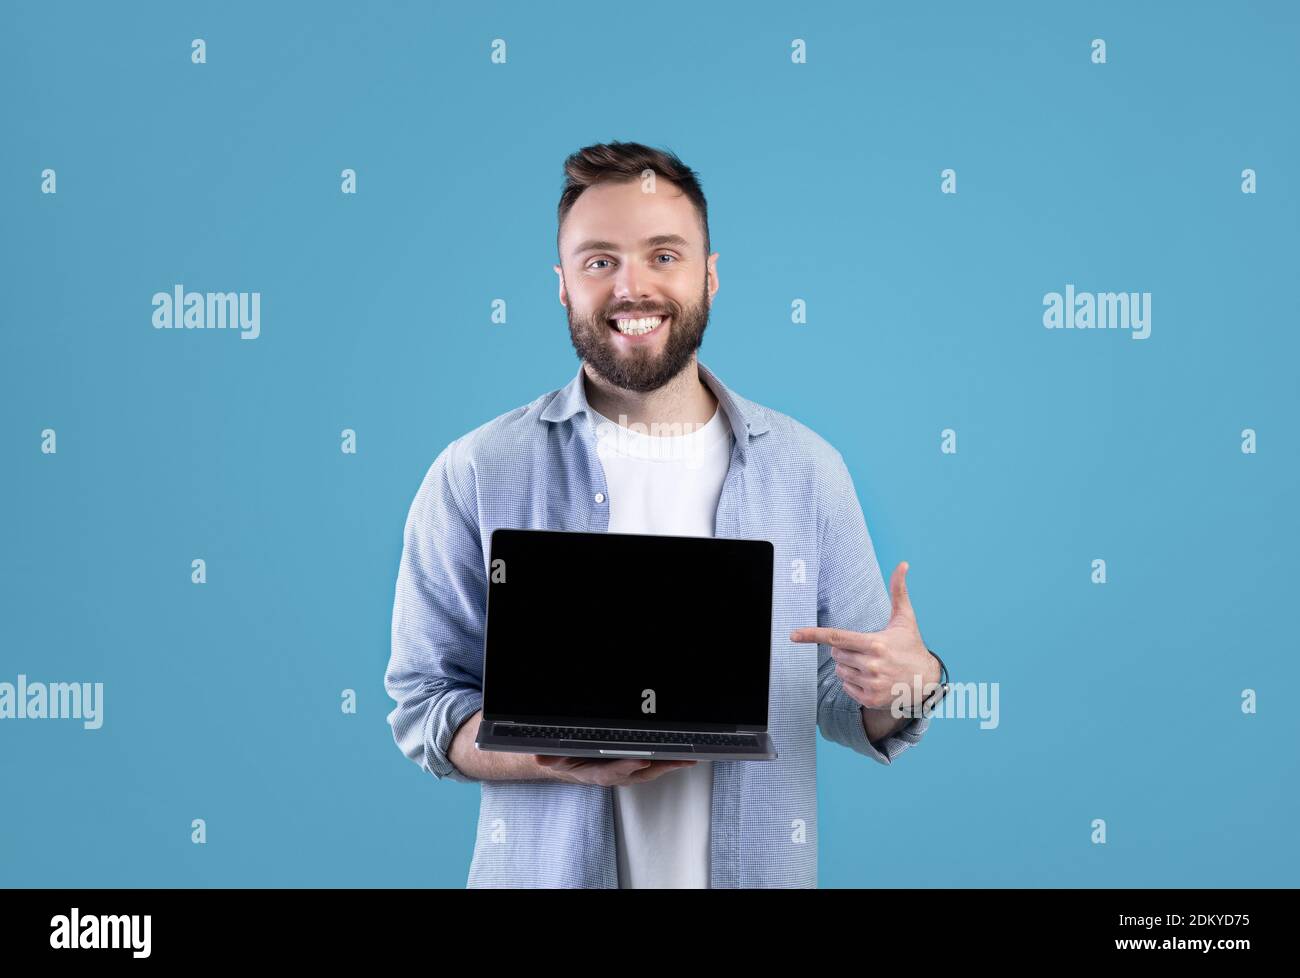 Portrait d'un homme à barbe heureux tenant un ordinateur portable avec écran vide sur fond bleu studio, maquette pour le design Banque D'Images